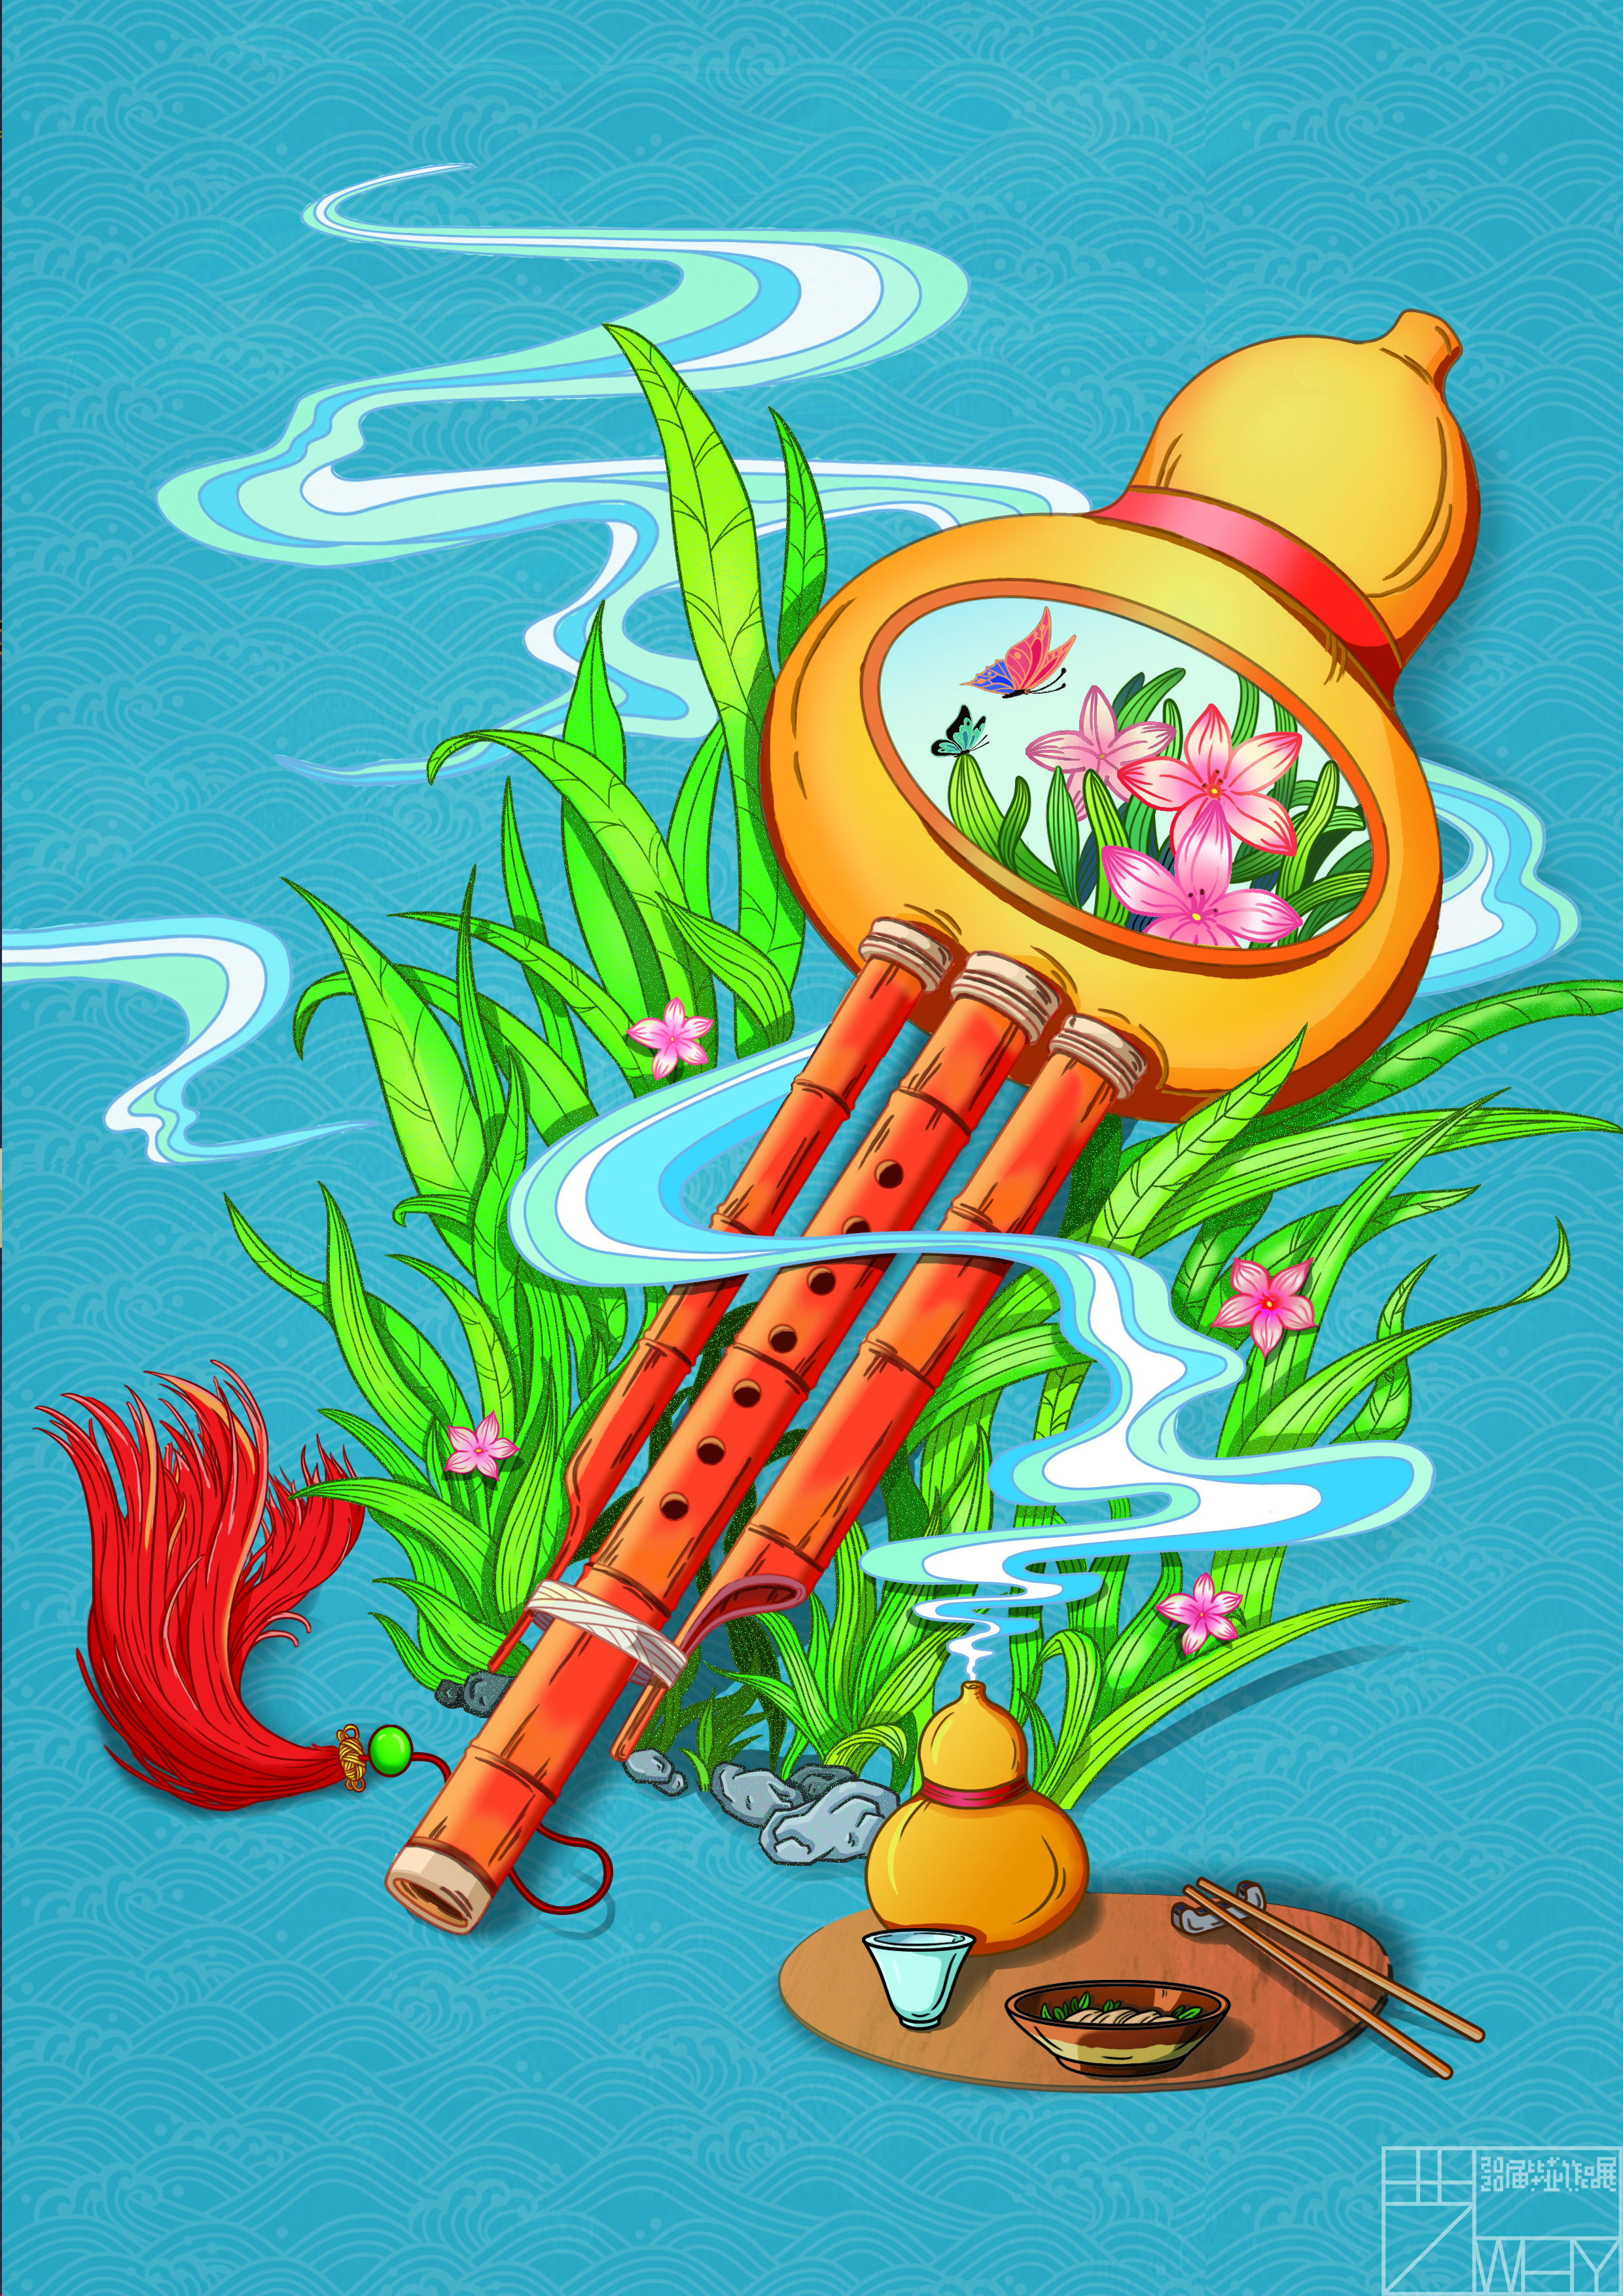 神乐署中国传统乐器系列主题插画设计